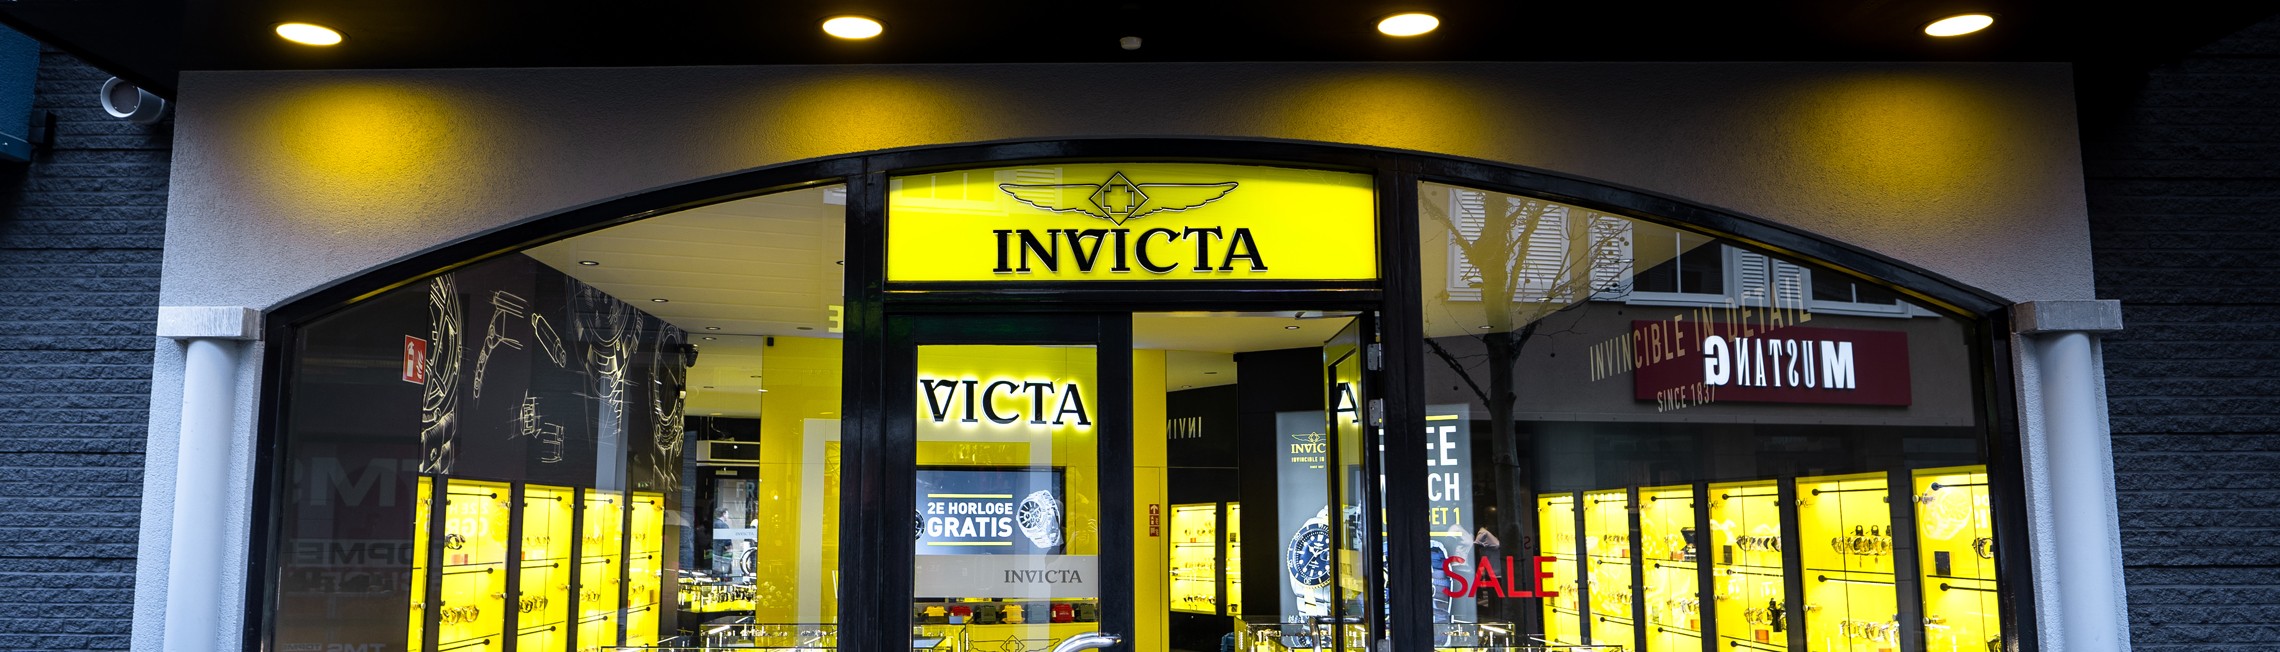 Invicta Watch Banner